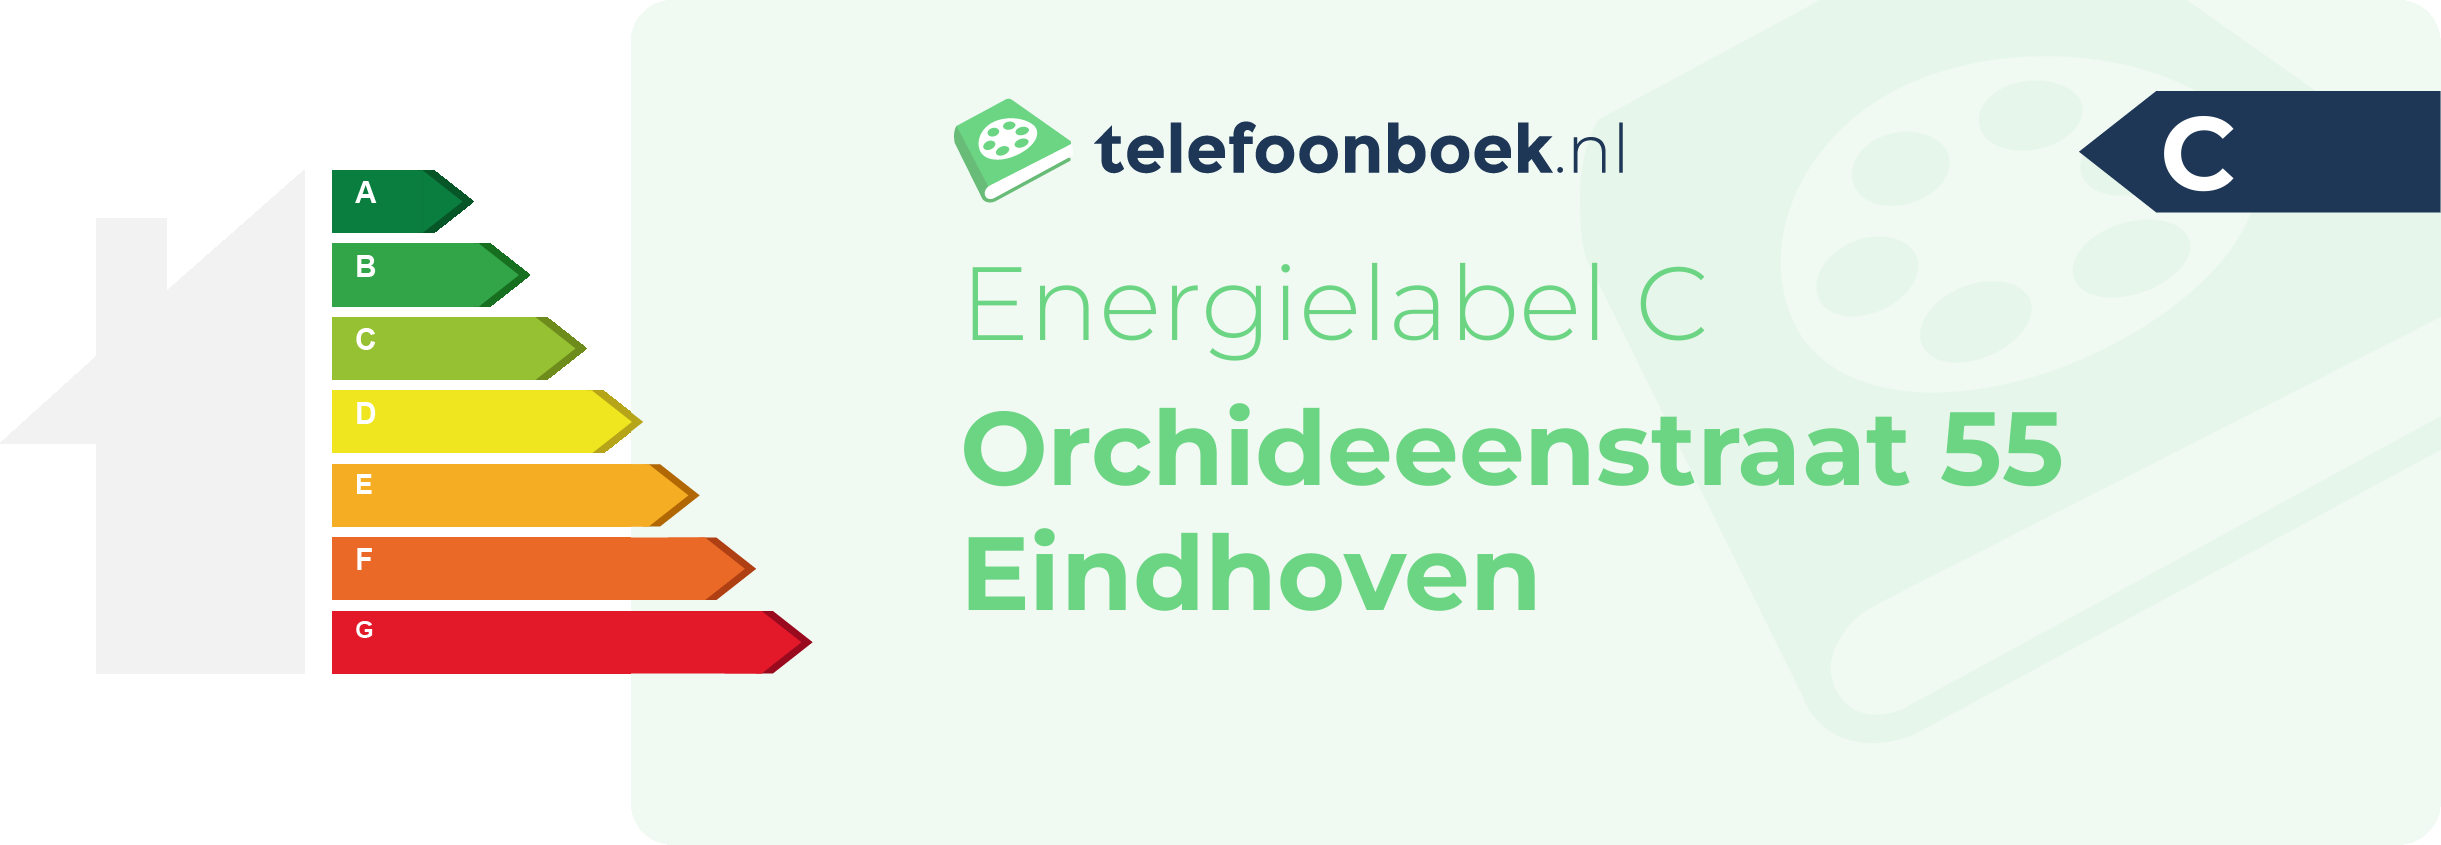 Energielabel Orchideeenstraat 55 Eindhoven